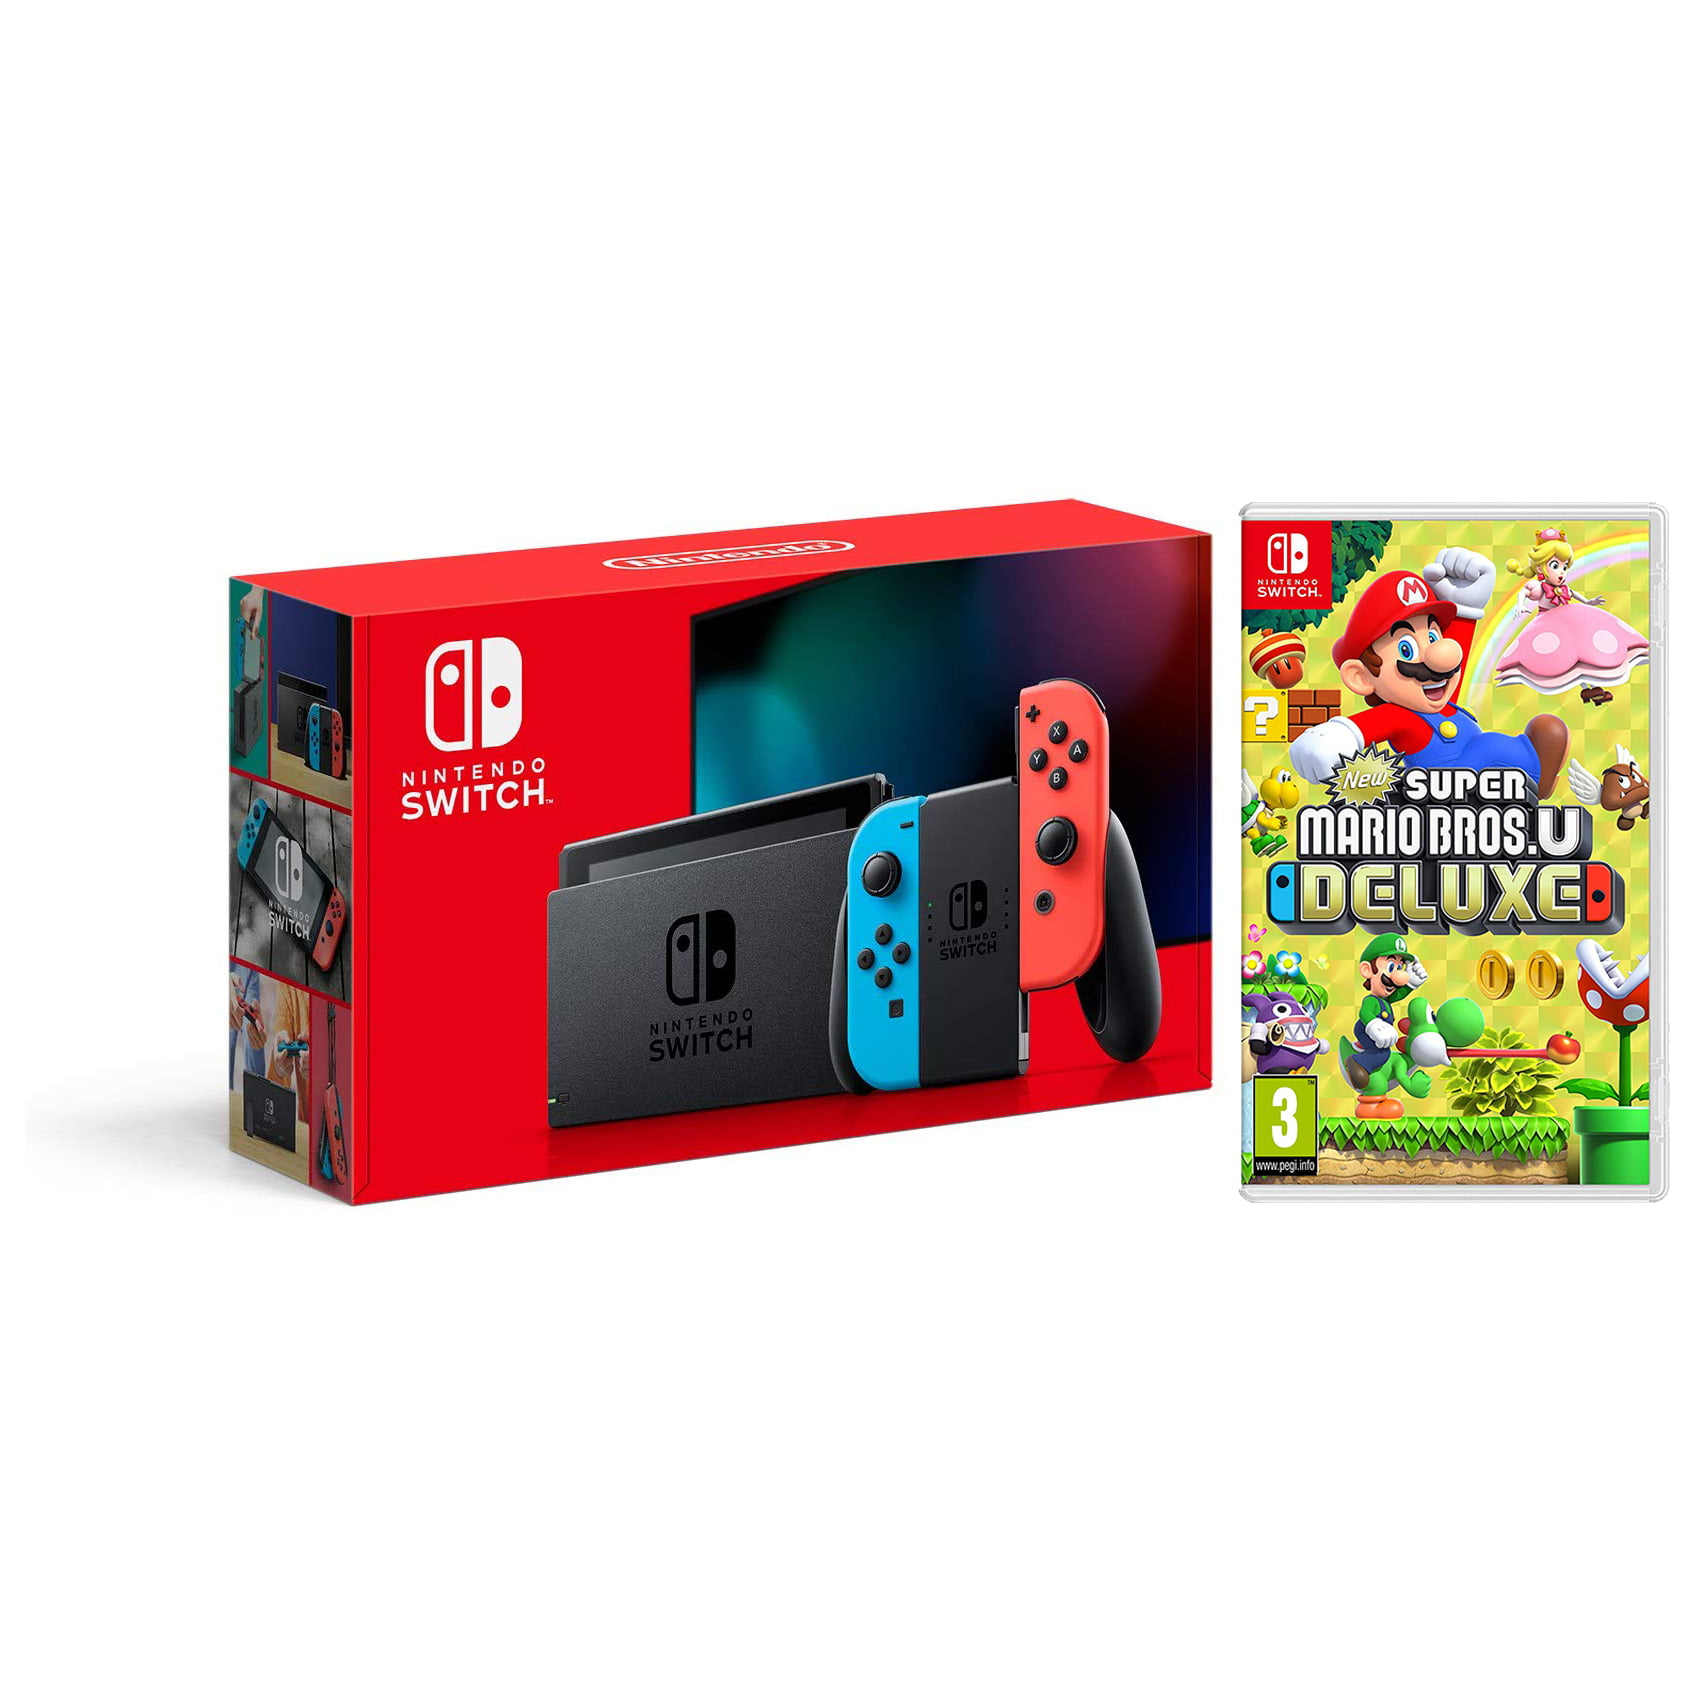 Nintendo Switch 32GB Console - Neon Joy-Con - New Version with New Super Mario Bros. U Deluxe Bundle